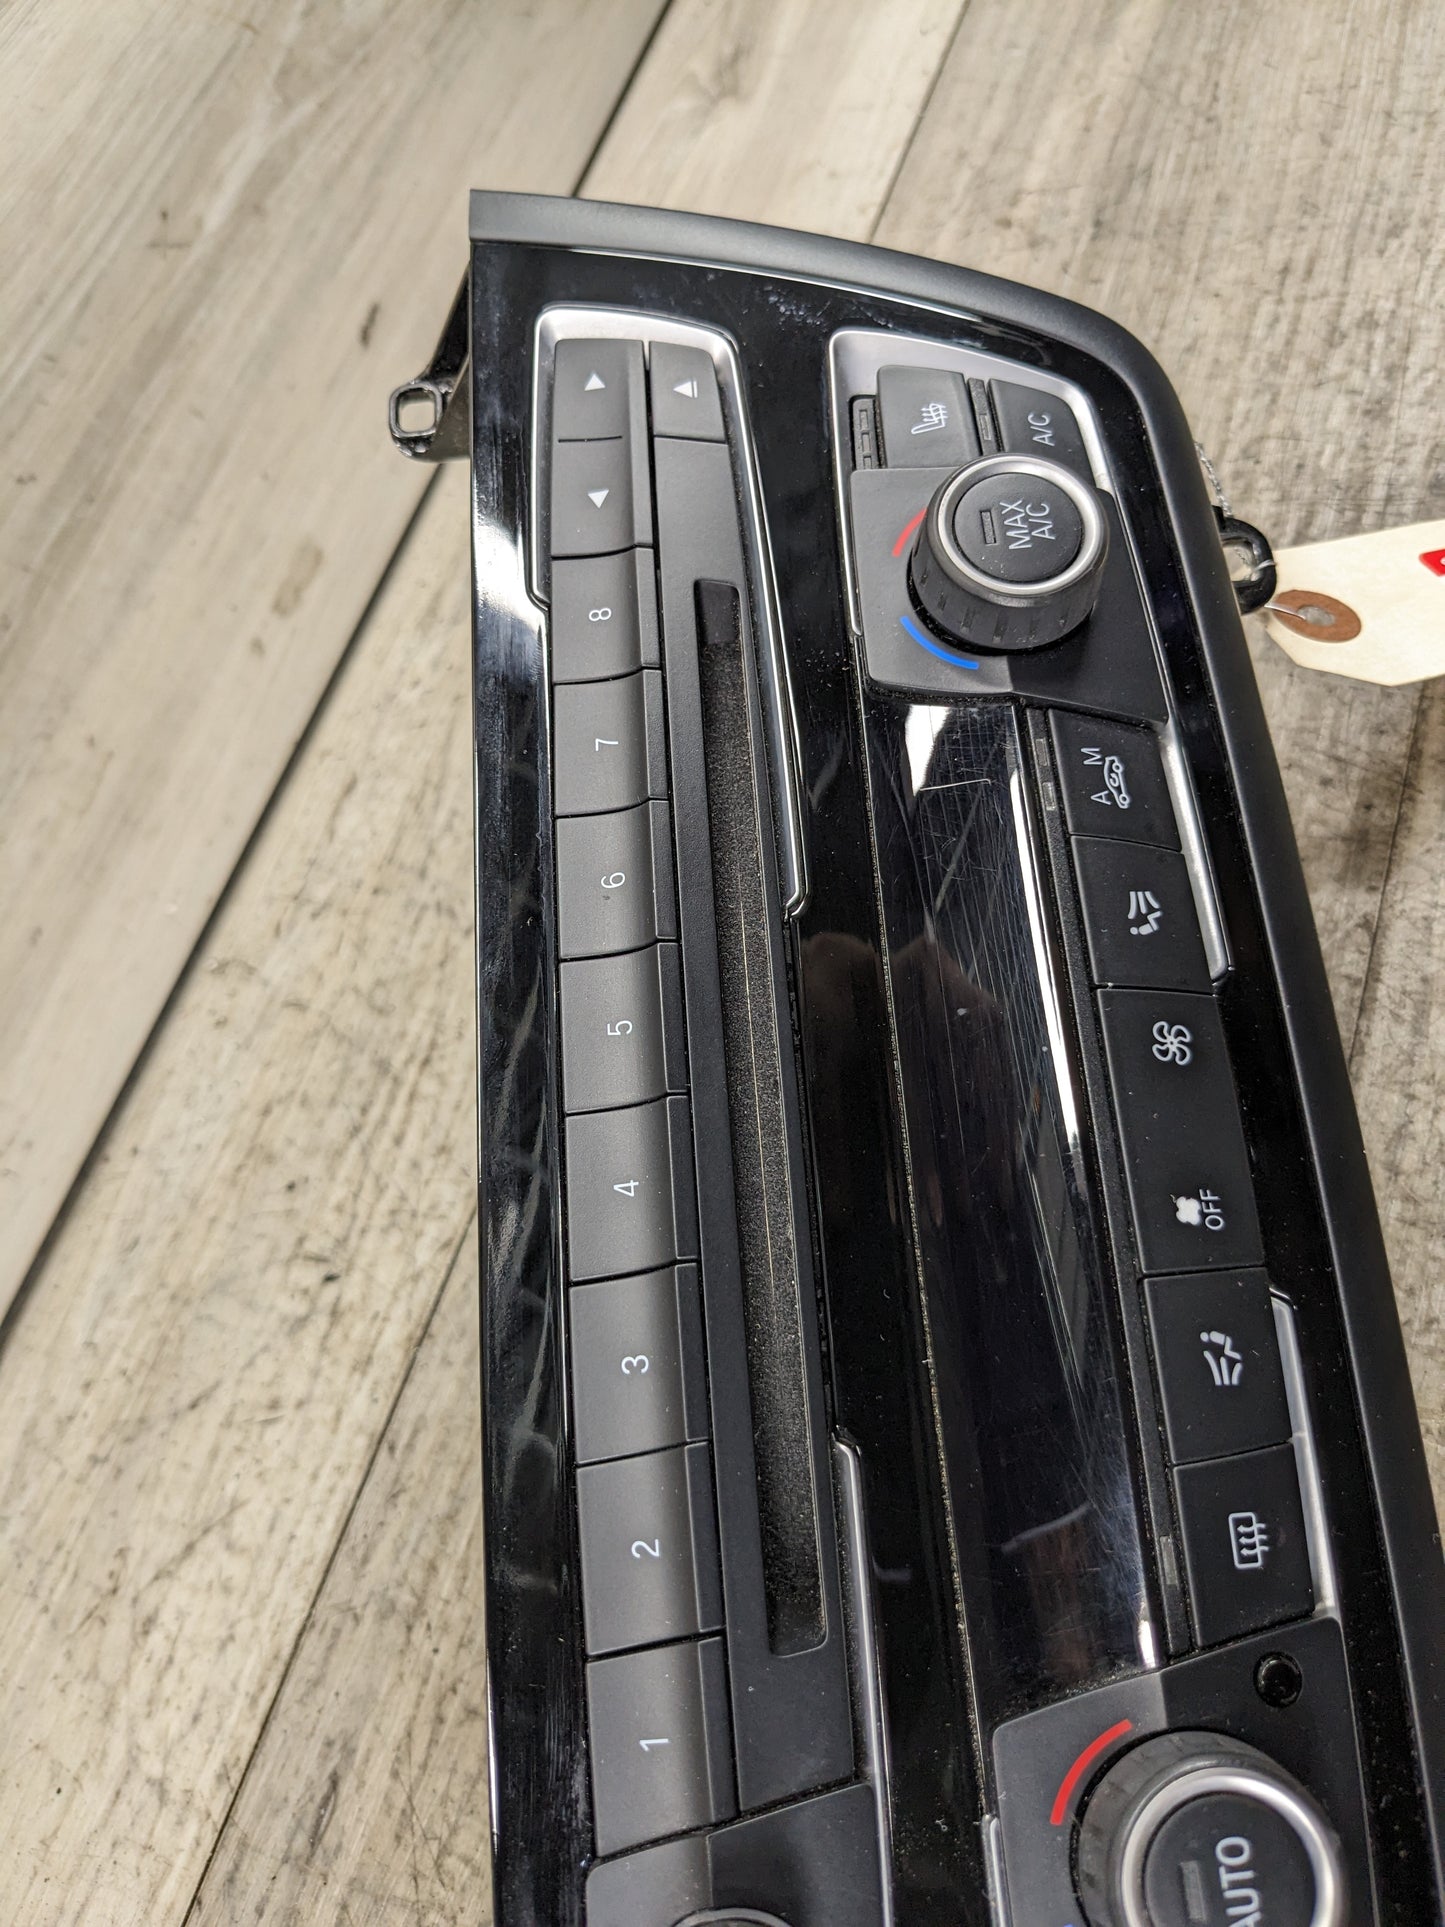 12-15 OEM BMW F22 F80 F30 F32 M3 M4 AC Heater Control Panel Radio Media Buttons